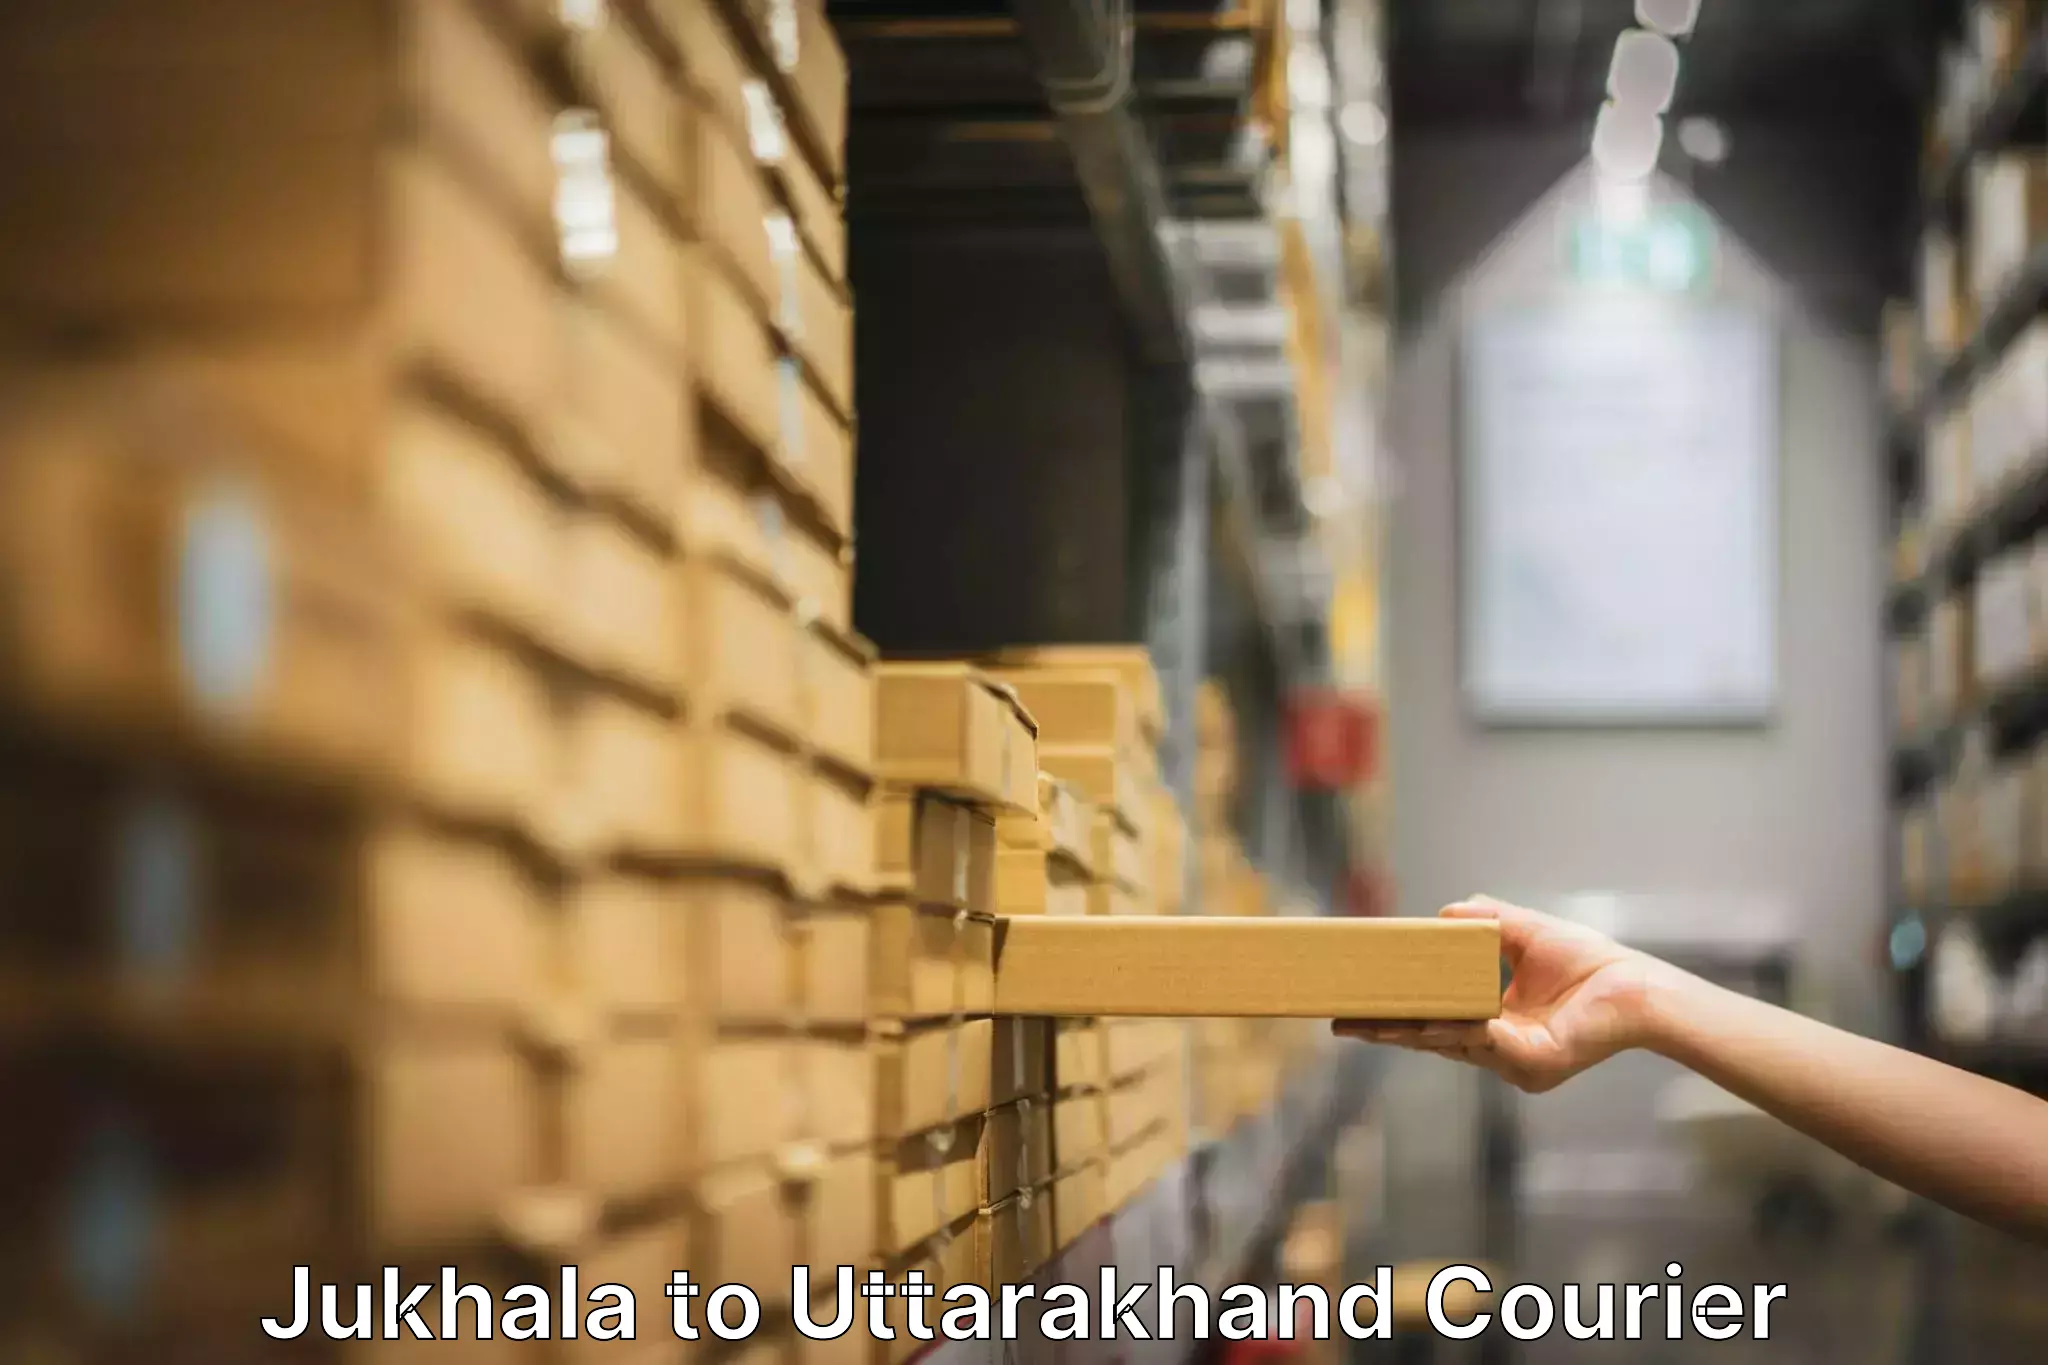 Trusted moving company Jukhala to Champawat